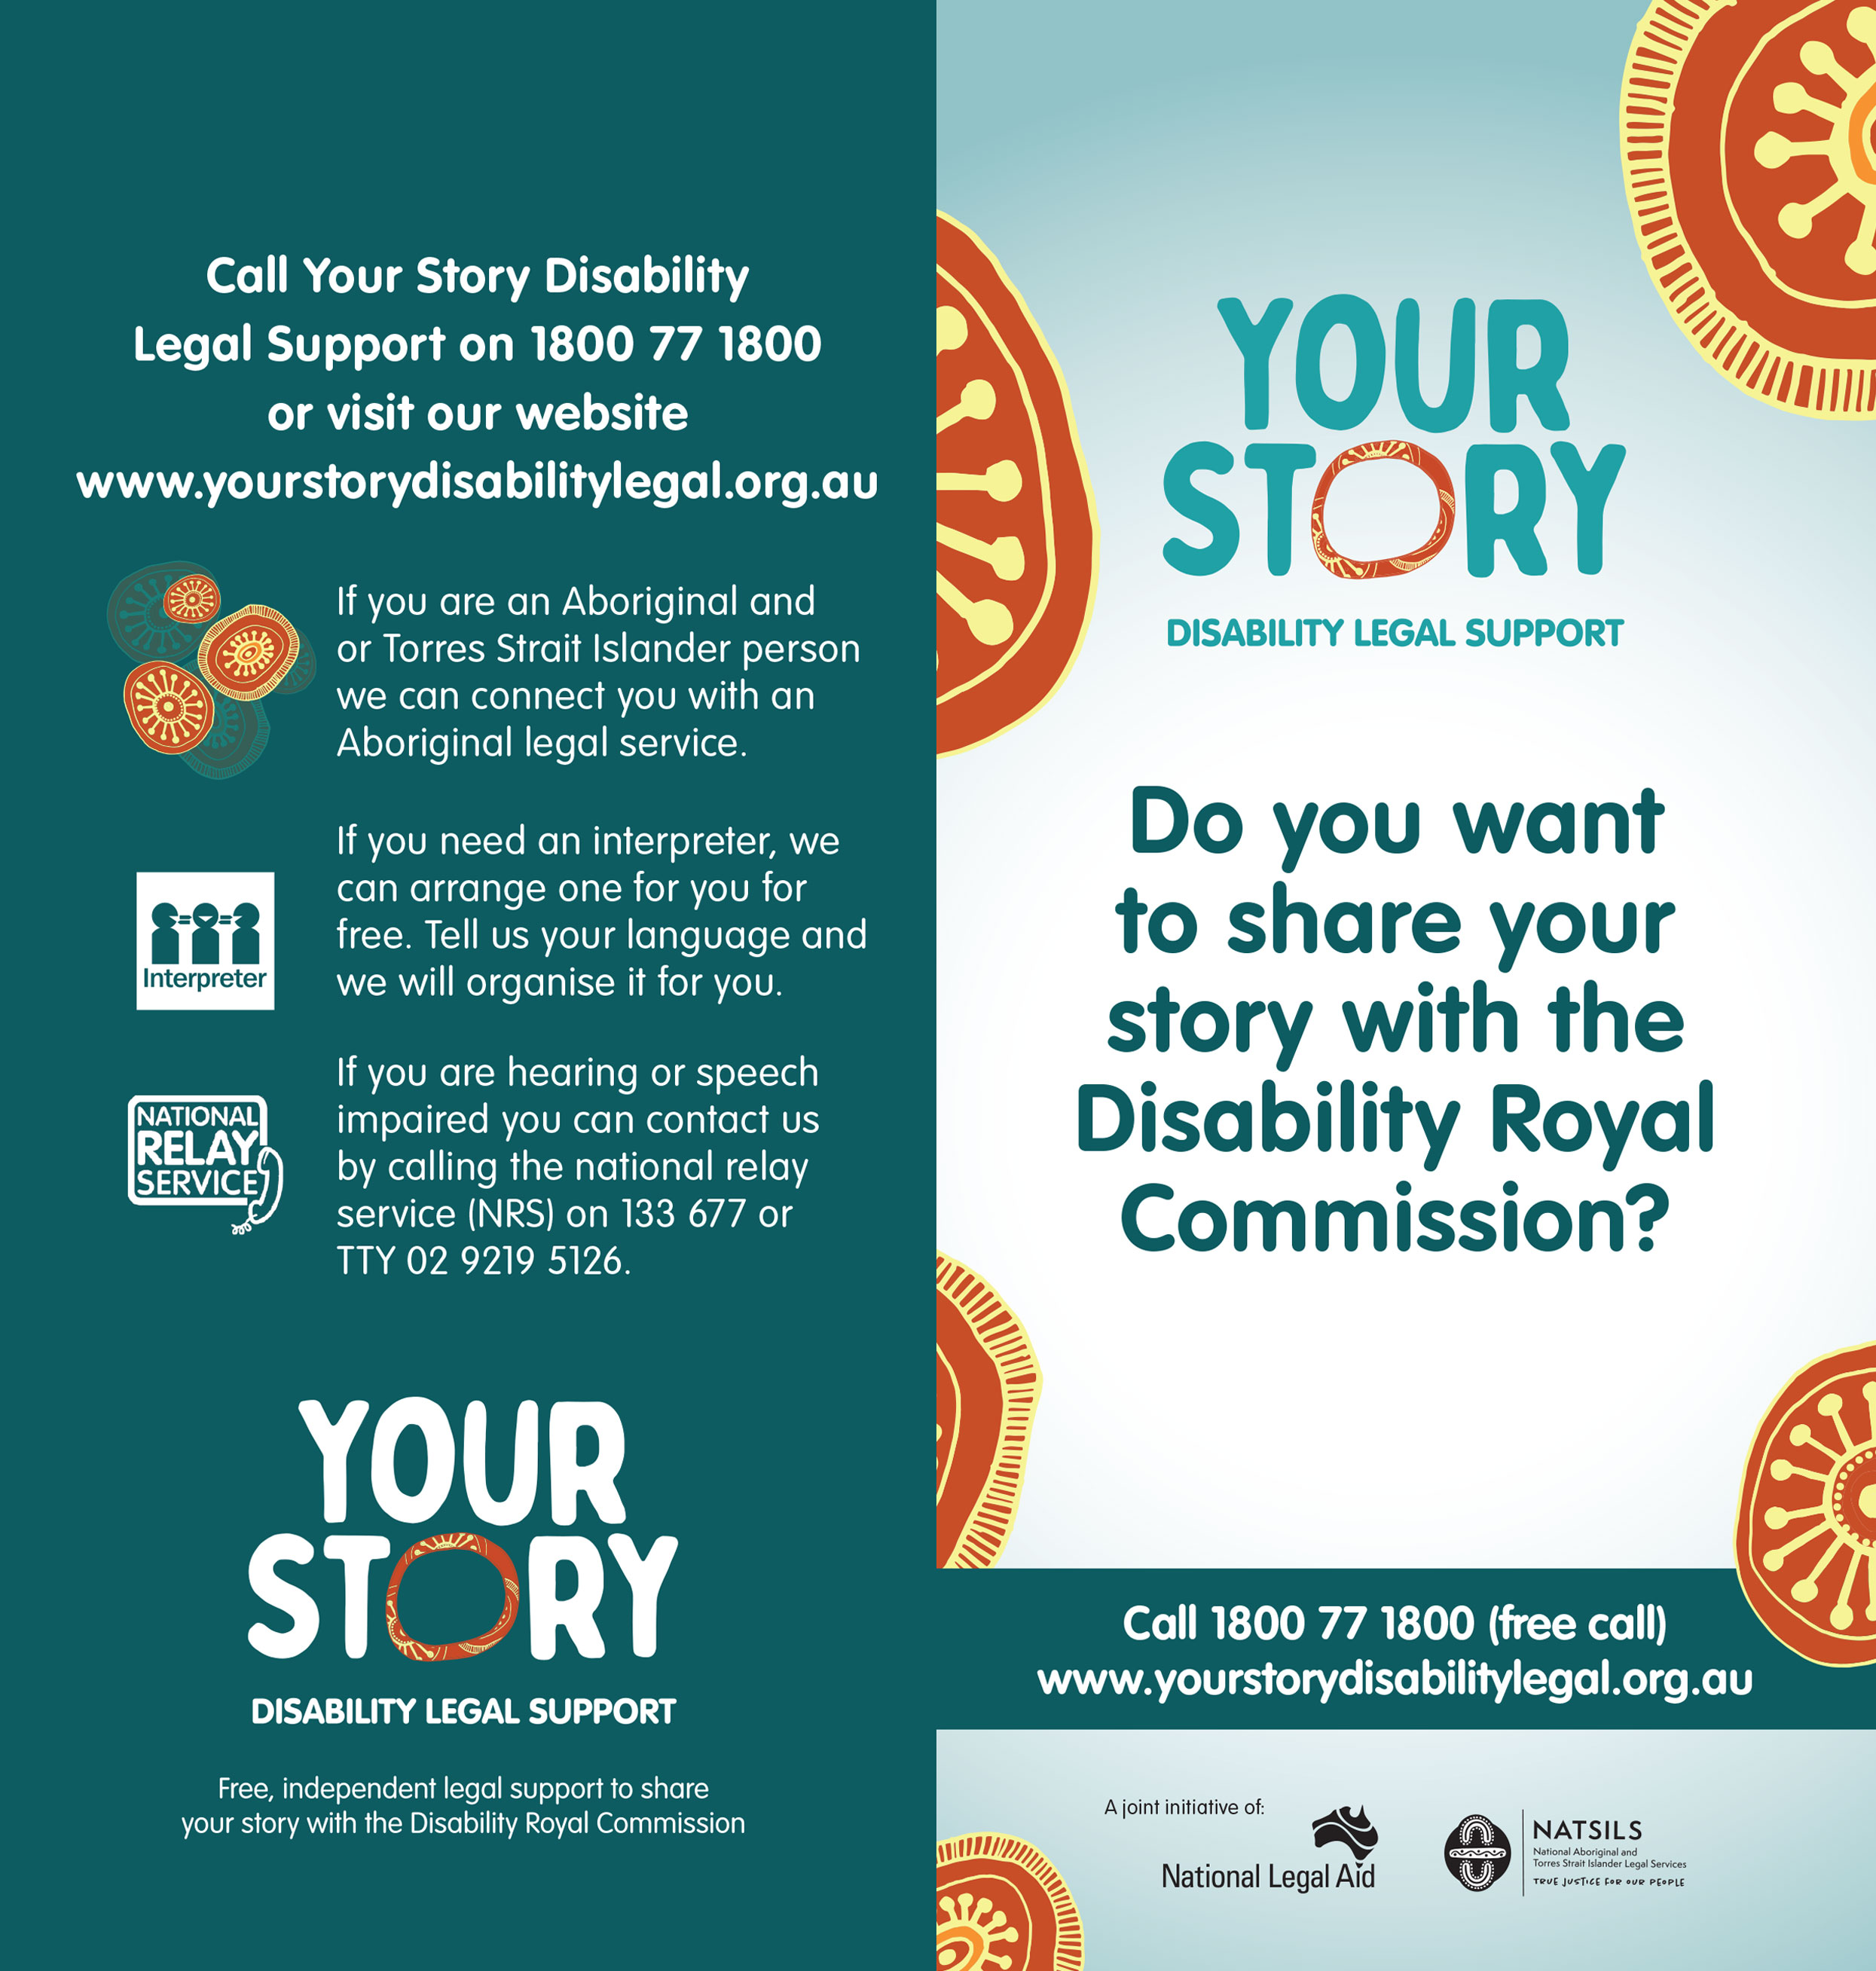 Quý vị có muốn chia sẻ câu chuyện của mình với Ủy ban Điều tra Hoàng gia về Người khuyết tật không?